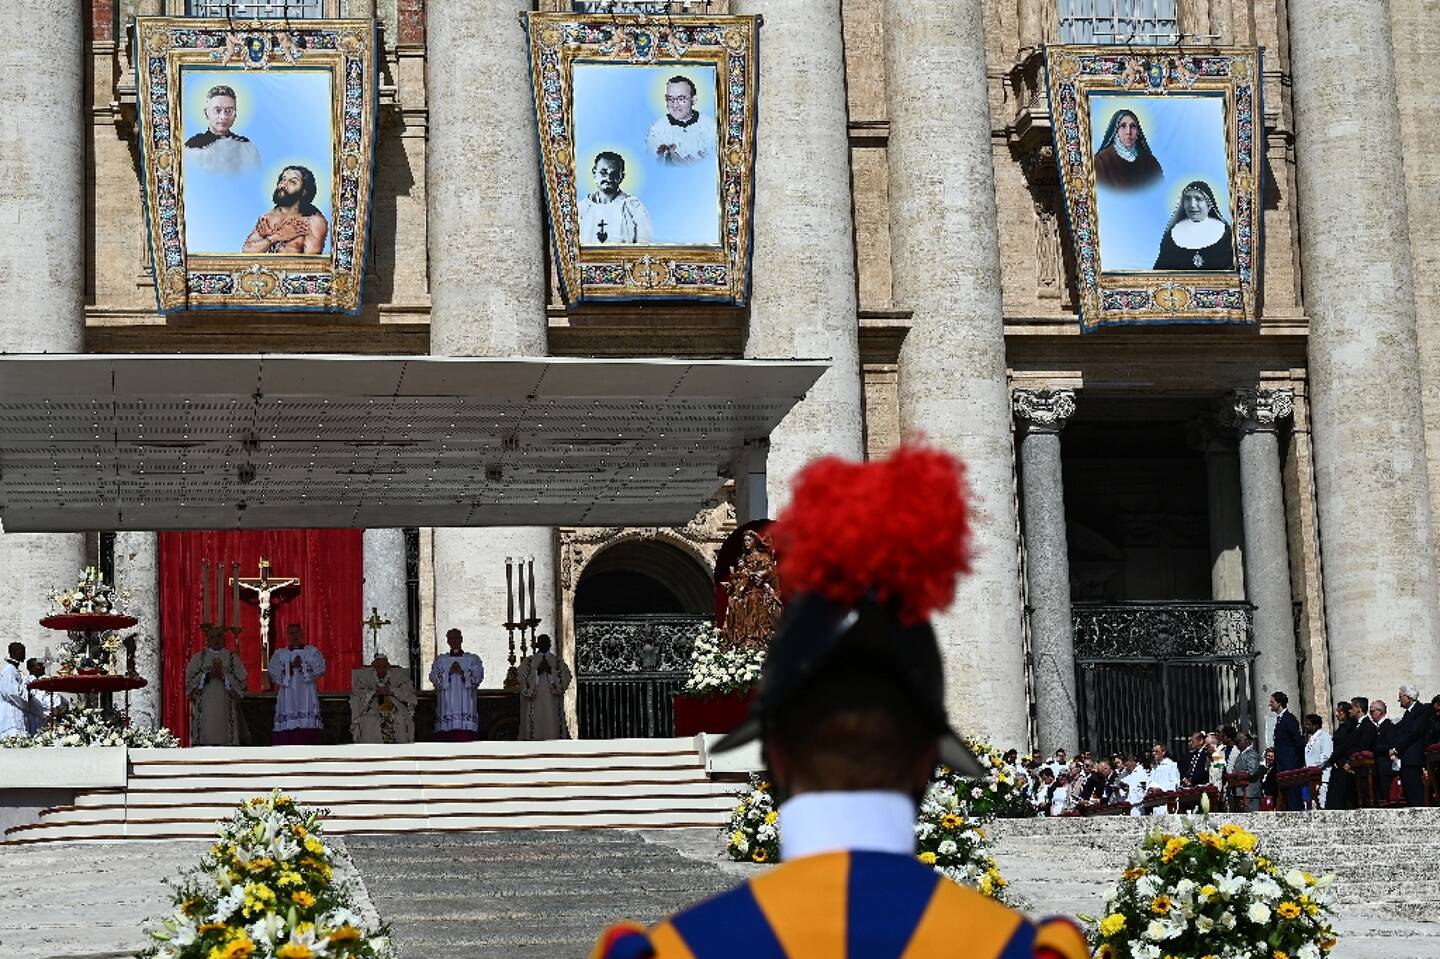 Le pape François préside la messe de canonisation de dix figures de l'Eglise, dont l'ermite du désert Charles de Foucauld, sur la place Saint-Pierre à Rome, le 15 mai 2022
